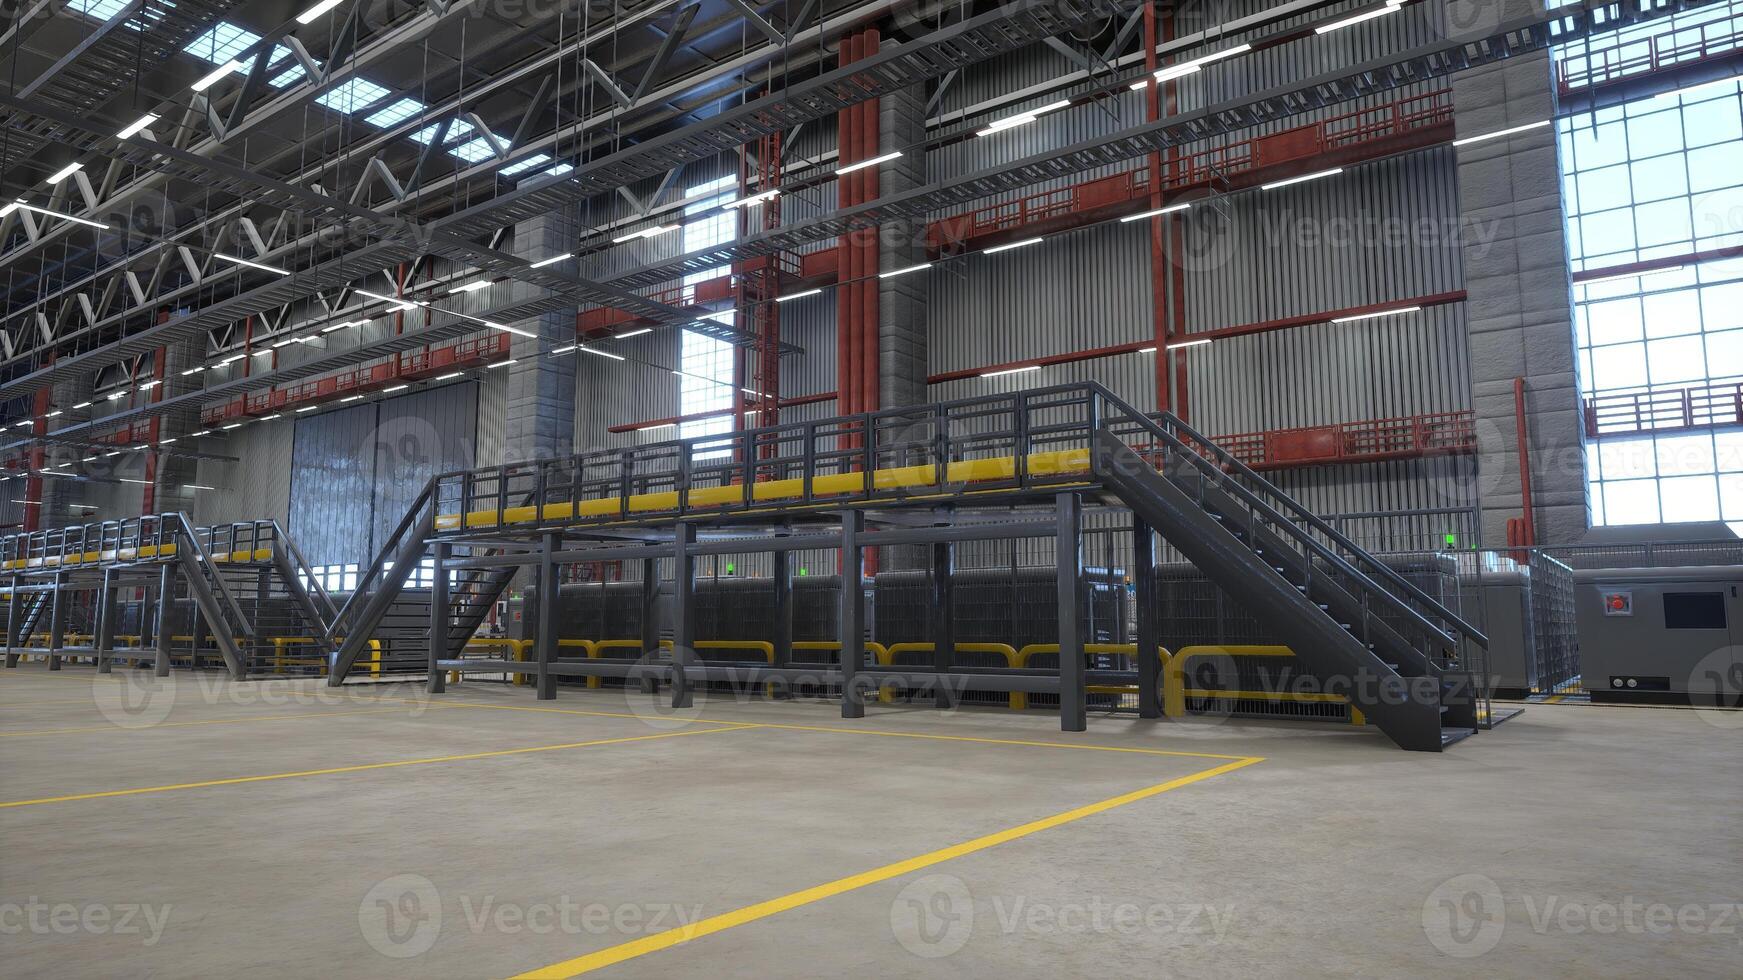 metalen platformen in faciliteit gebruikt voor energie doeltreffend warehousing behandeling distributie en opslagruimte behoeften van ondernemingen, 3d weergave. leeg logistiek, levering keten en distributie hub foto